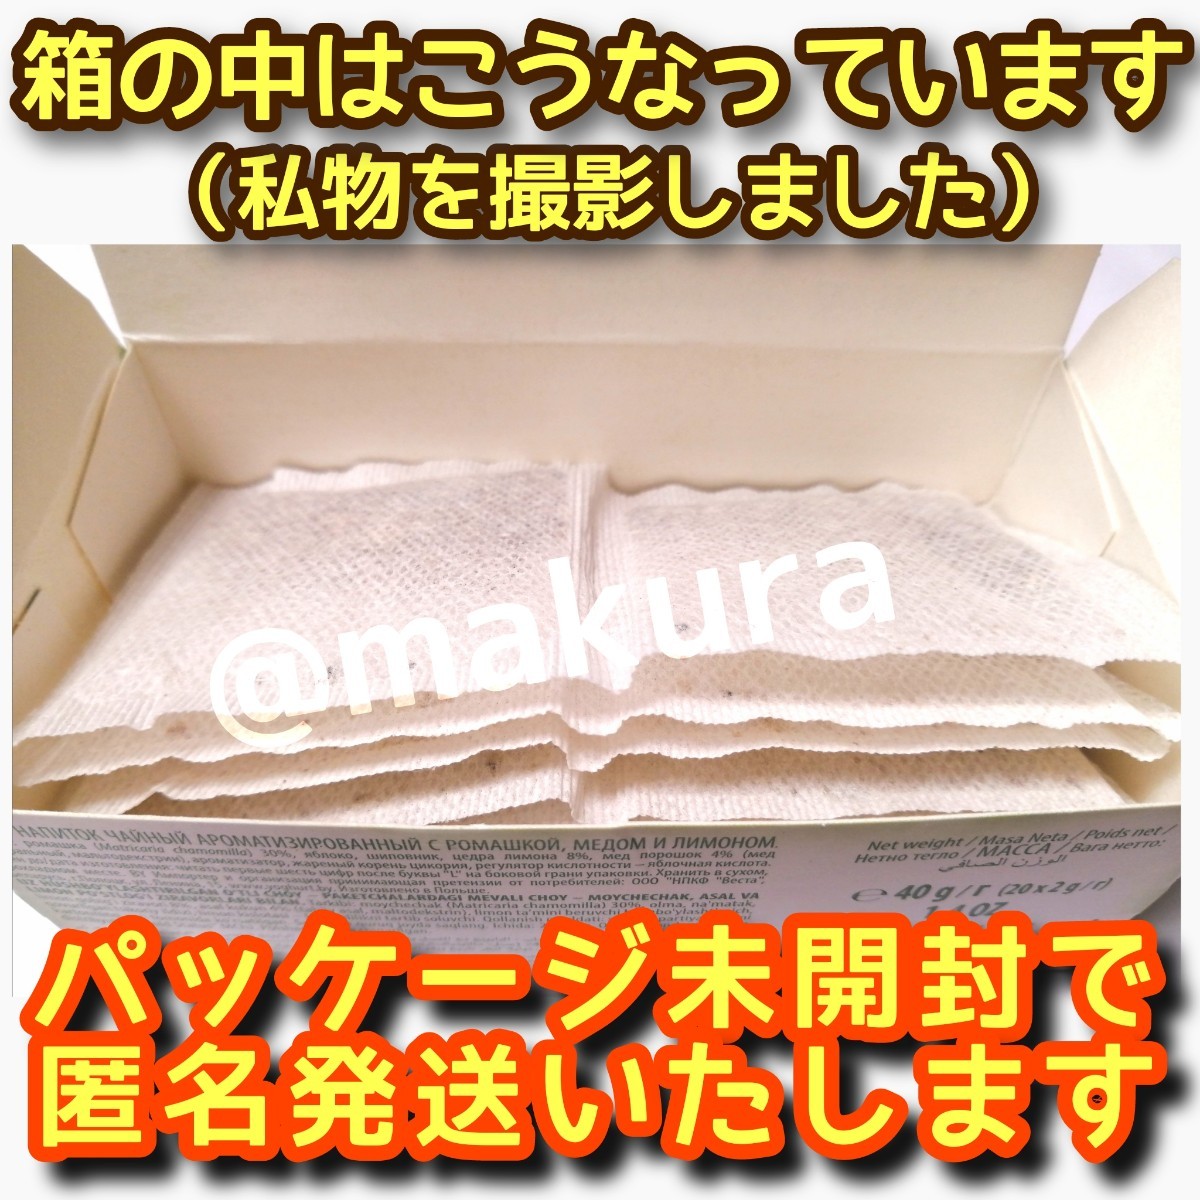 【未開封品】カモミールティーはちみつ&レモン ハニーレモン 2g×20パック入り 4箱